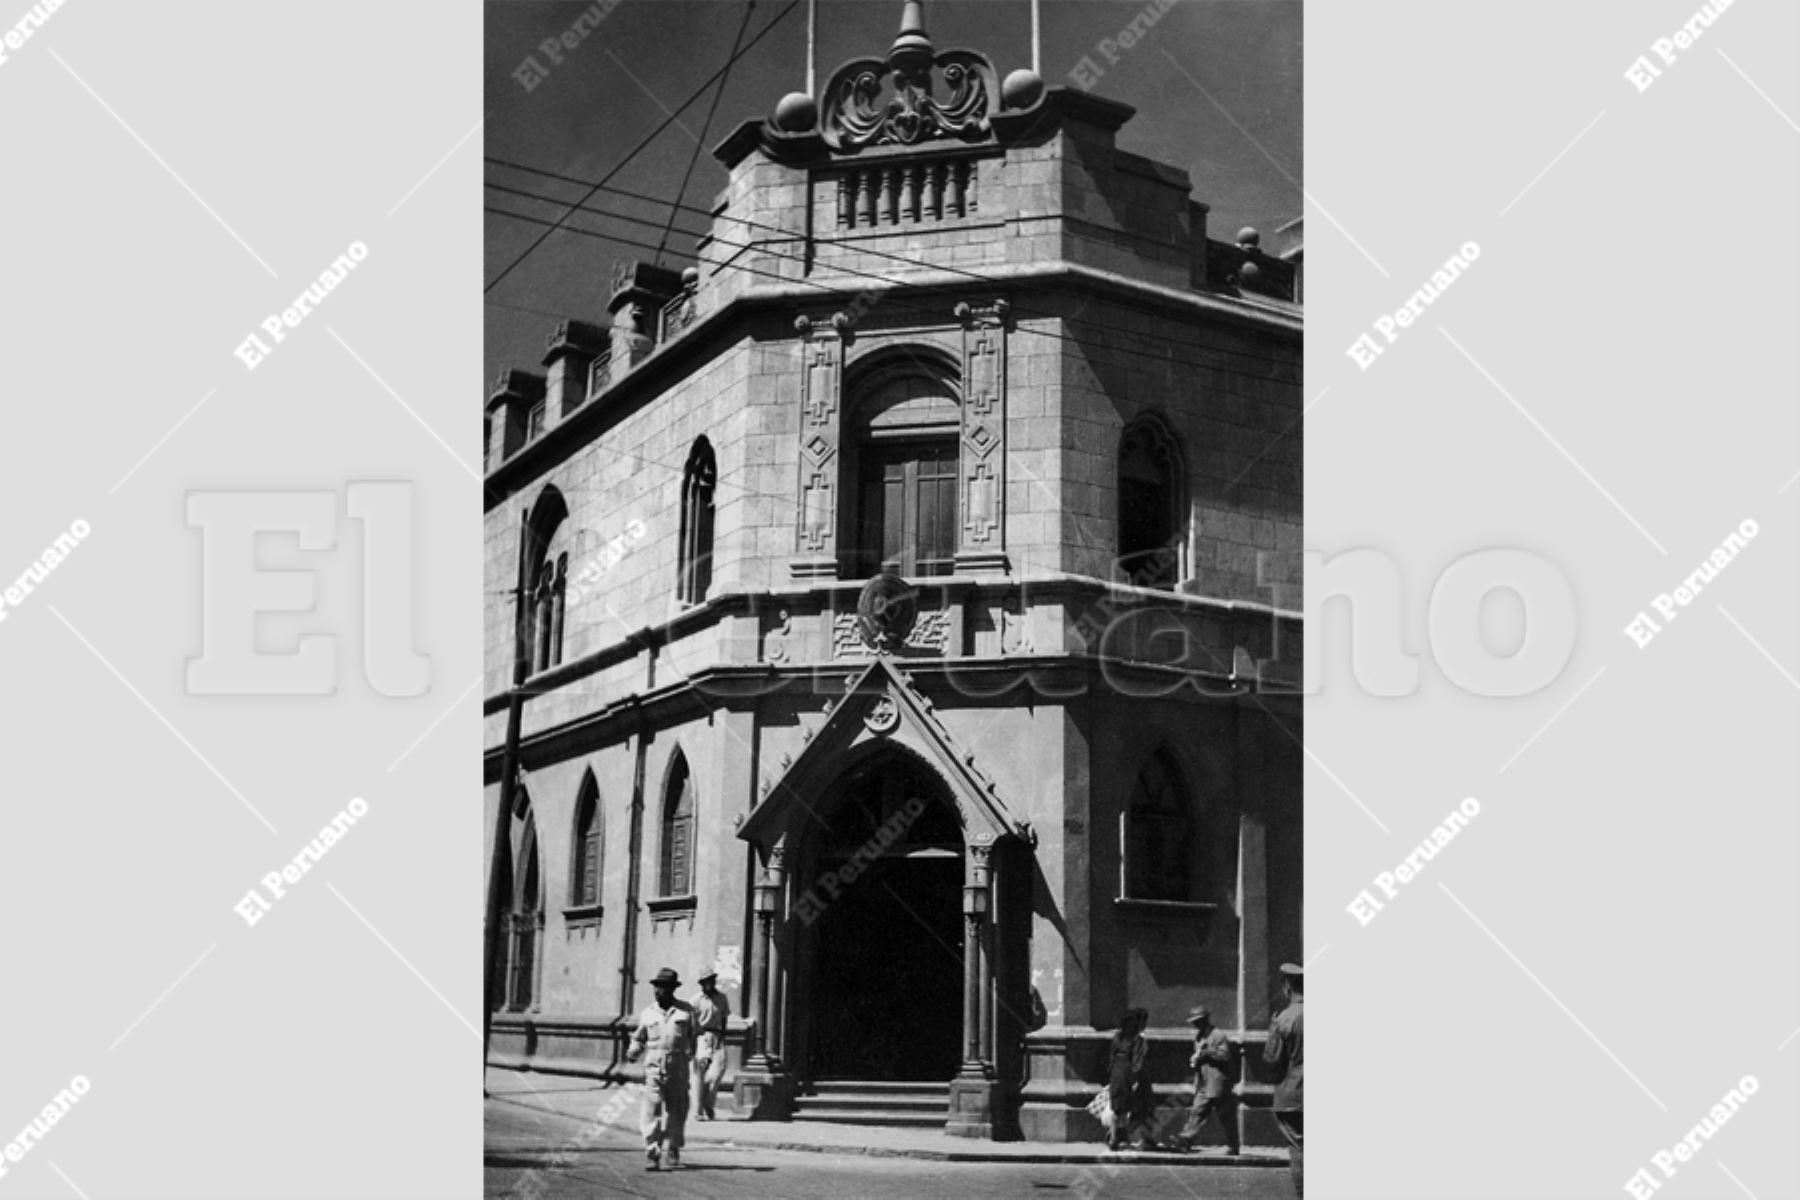 Arequipa - 1952 / Palacio Arzobispal de Arequipa.
Foto: Archivo Histórico / El Peruano